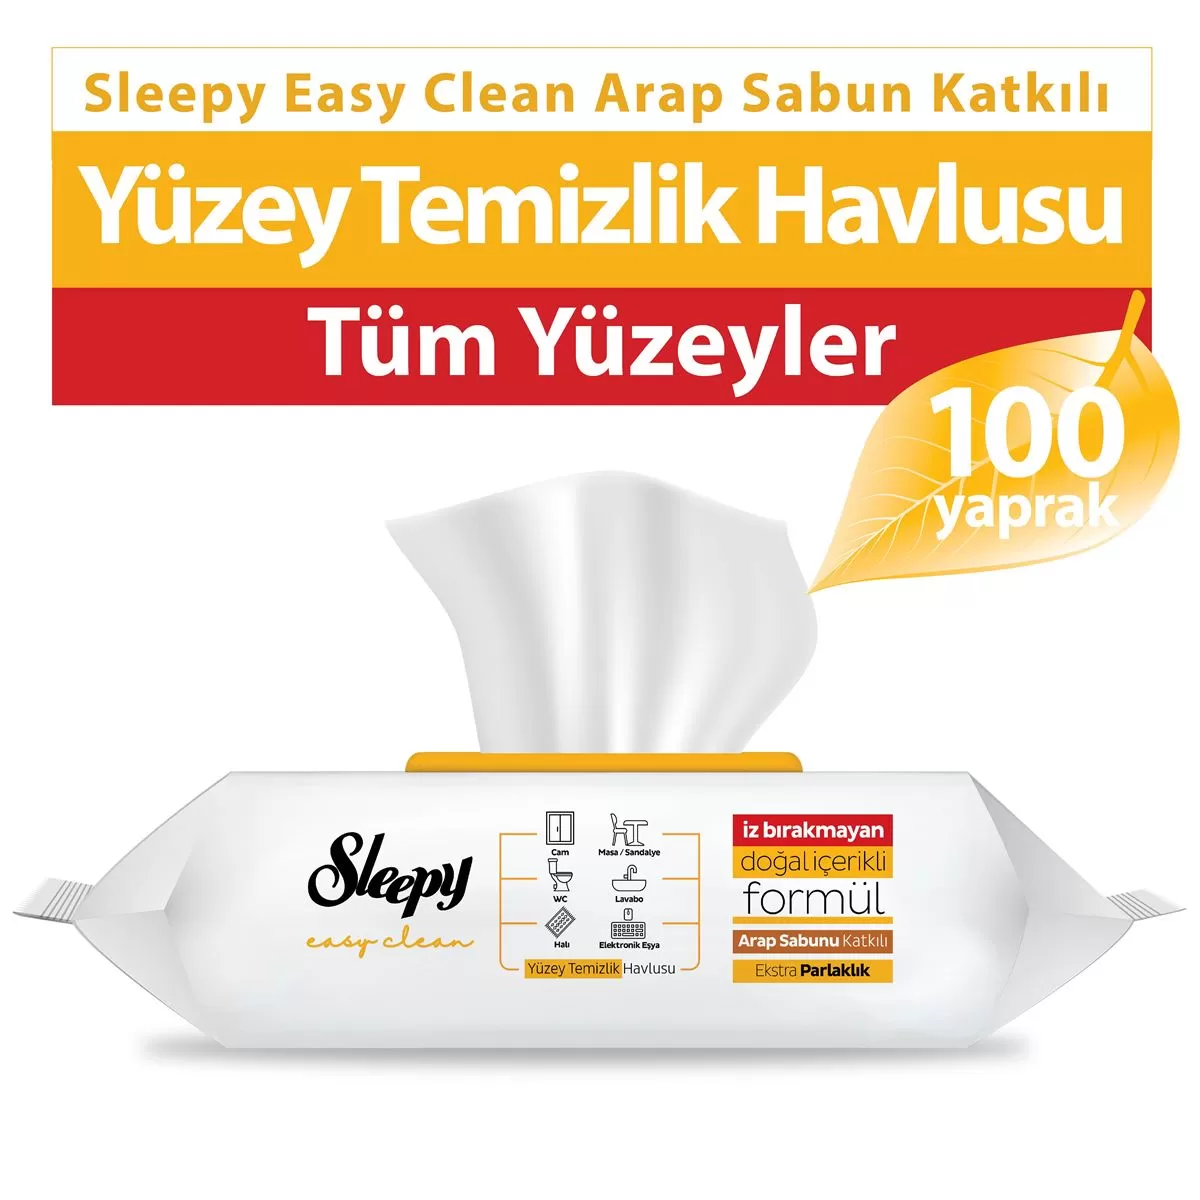 Sleepy Easy Clean Yüzey Temizlik Havlusu Arap Sabun Katkılı 100 Yaprak 2 Paket